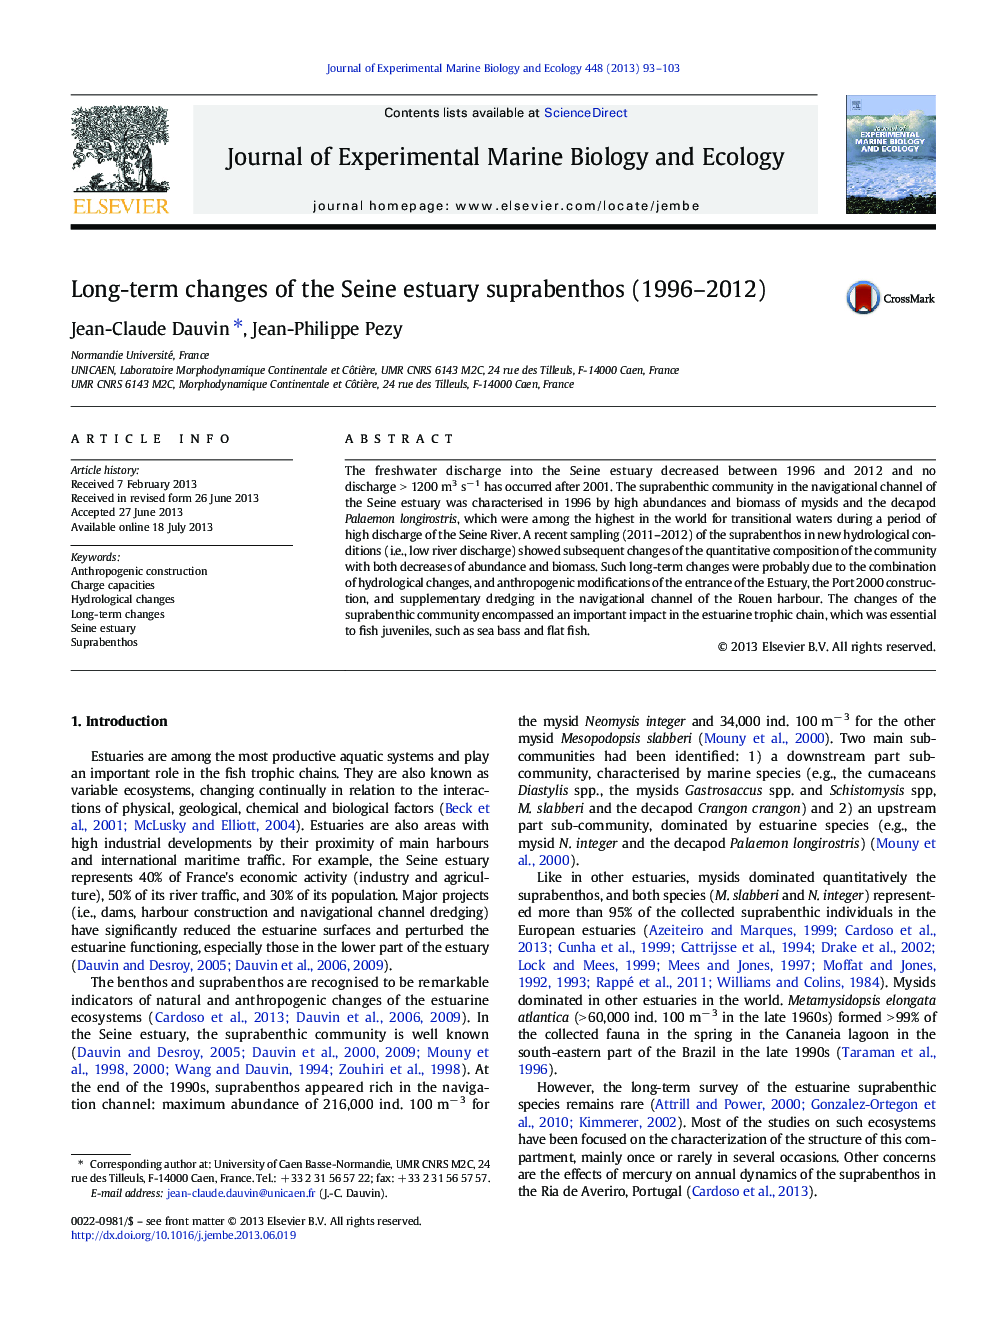 Long-term changes of the Seine estuary suprabenthos (1996-2012)